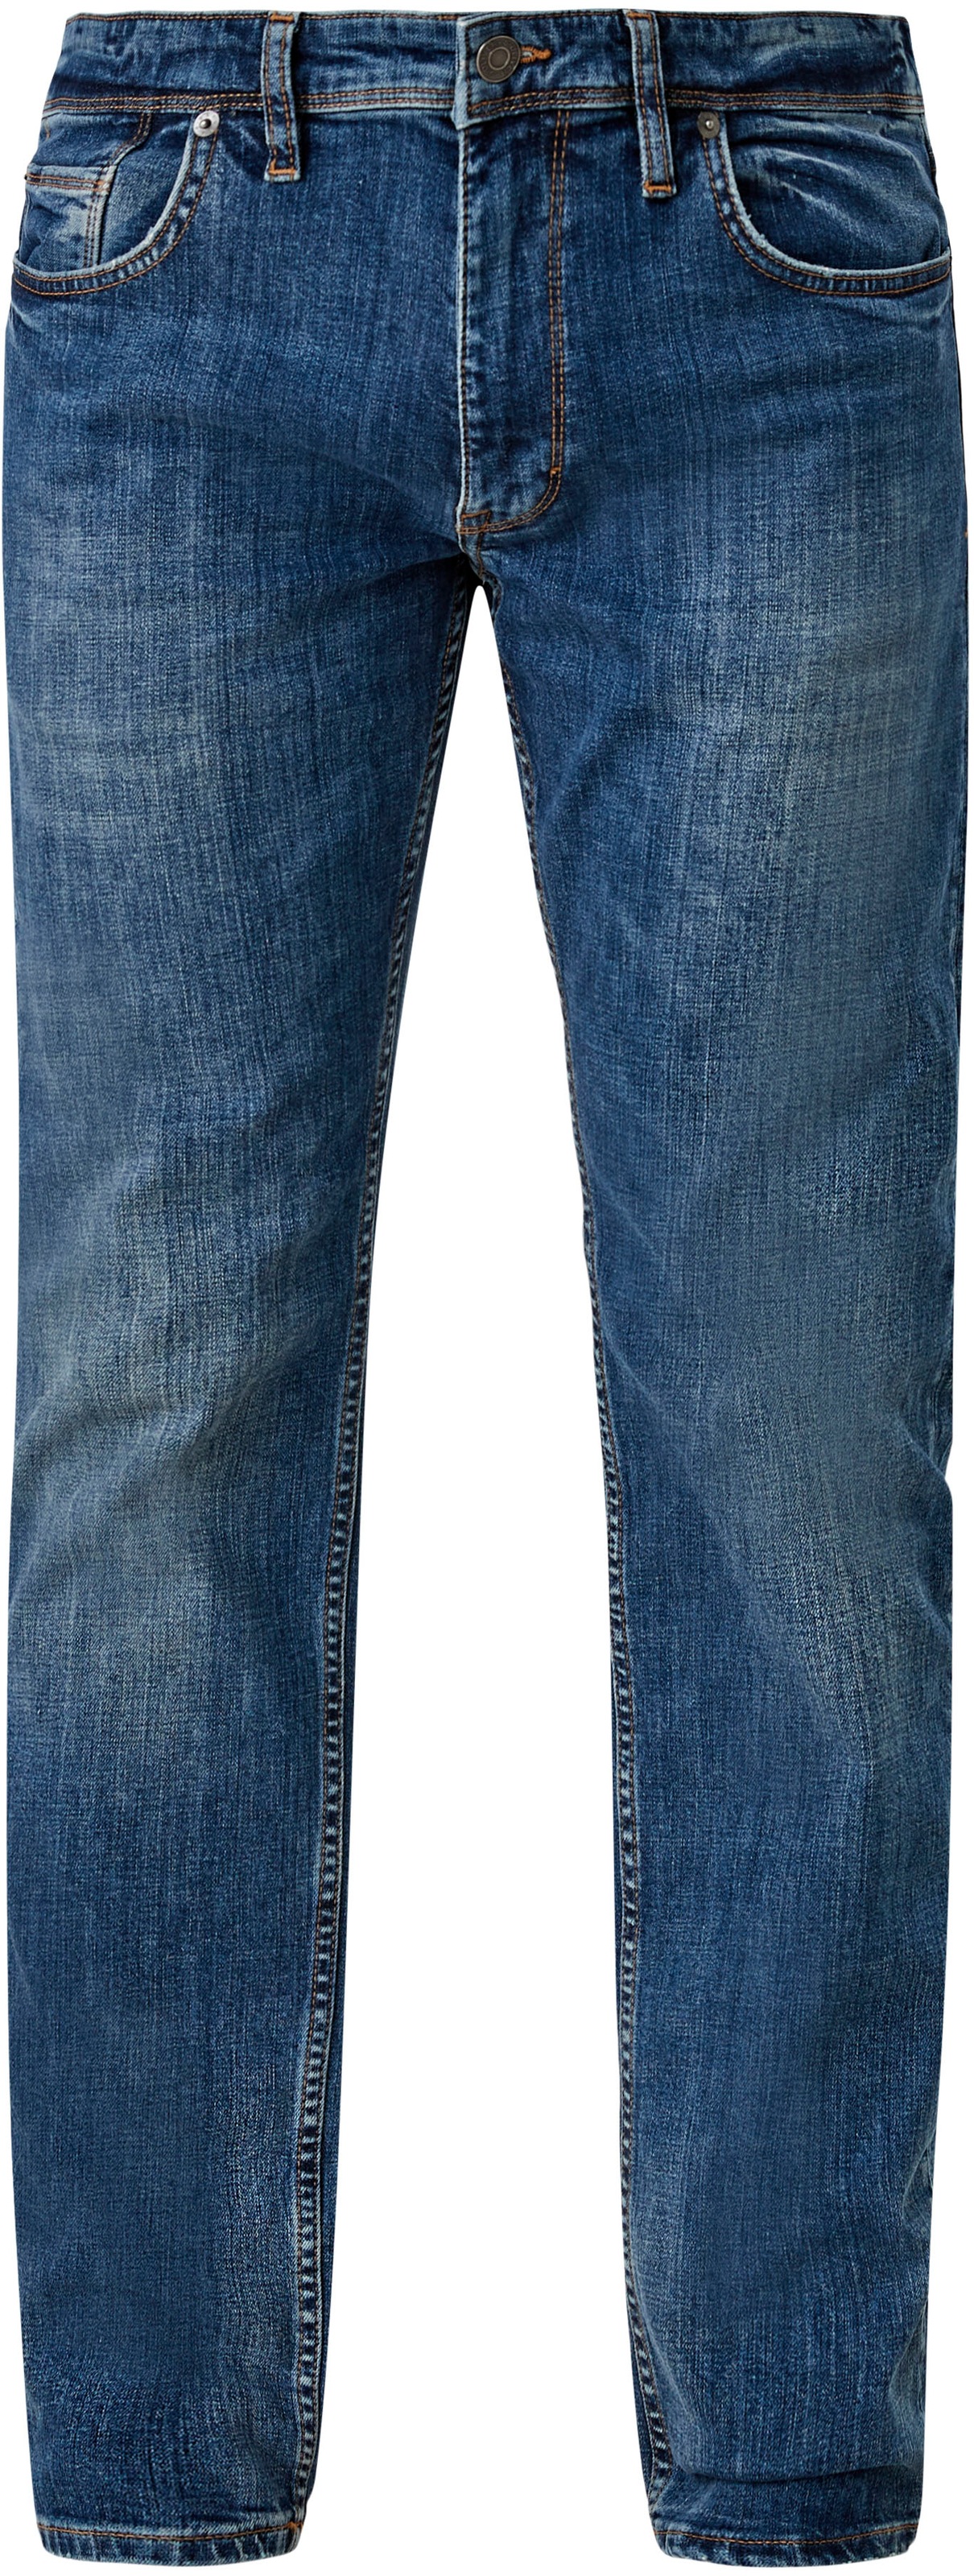 bei ♕ Waschung mit 5-Pocket-Jeans, s.Oliver authentischer